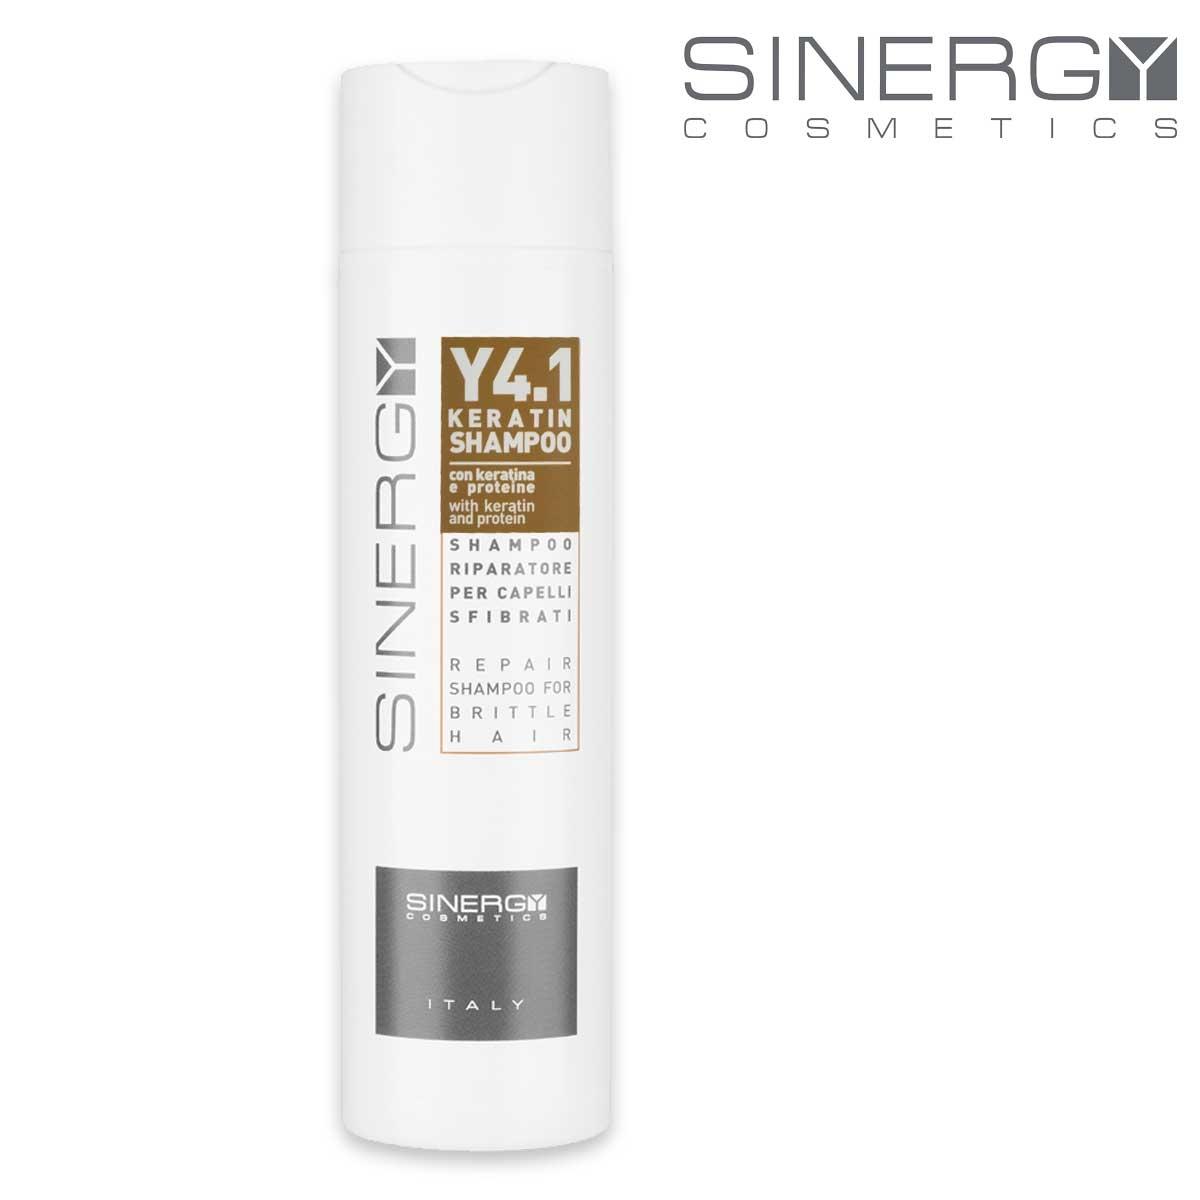 Sinergy y4.1 keratin shampoo 250 ml